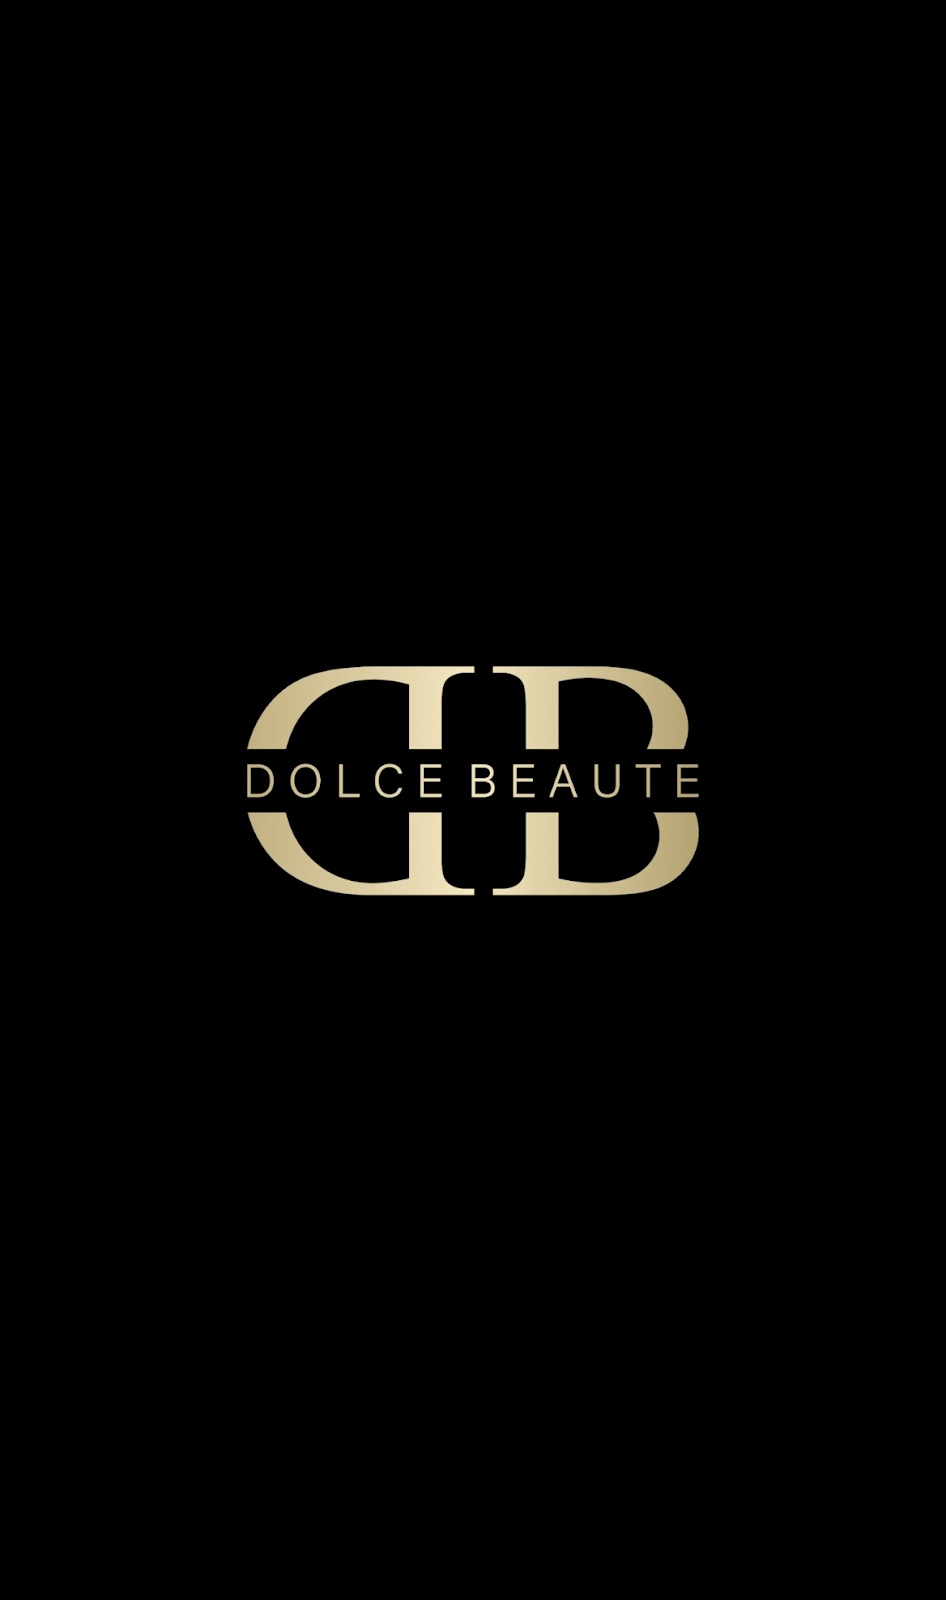 Dolce Beaute | beauty salon | 48 Bazentin St, Belfield NSW 2191, Australia | 0451910800 OR +61 451 910 800